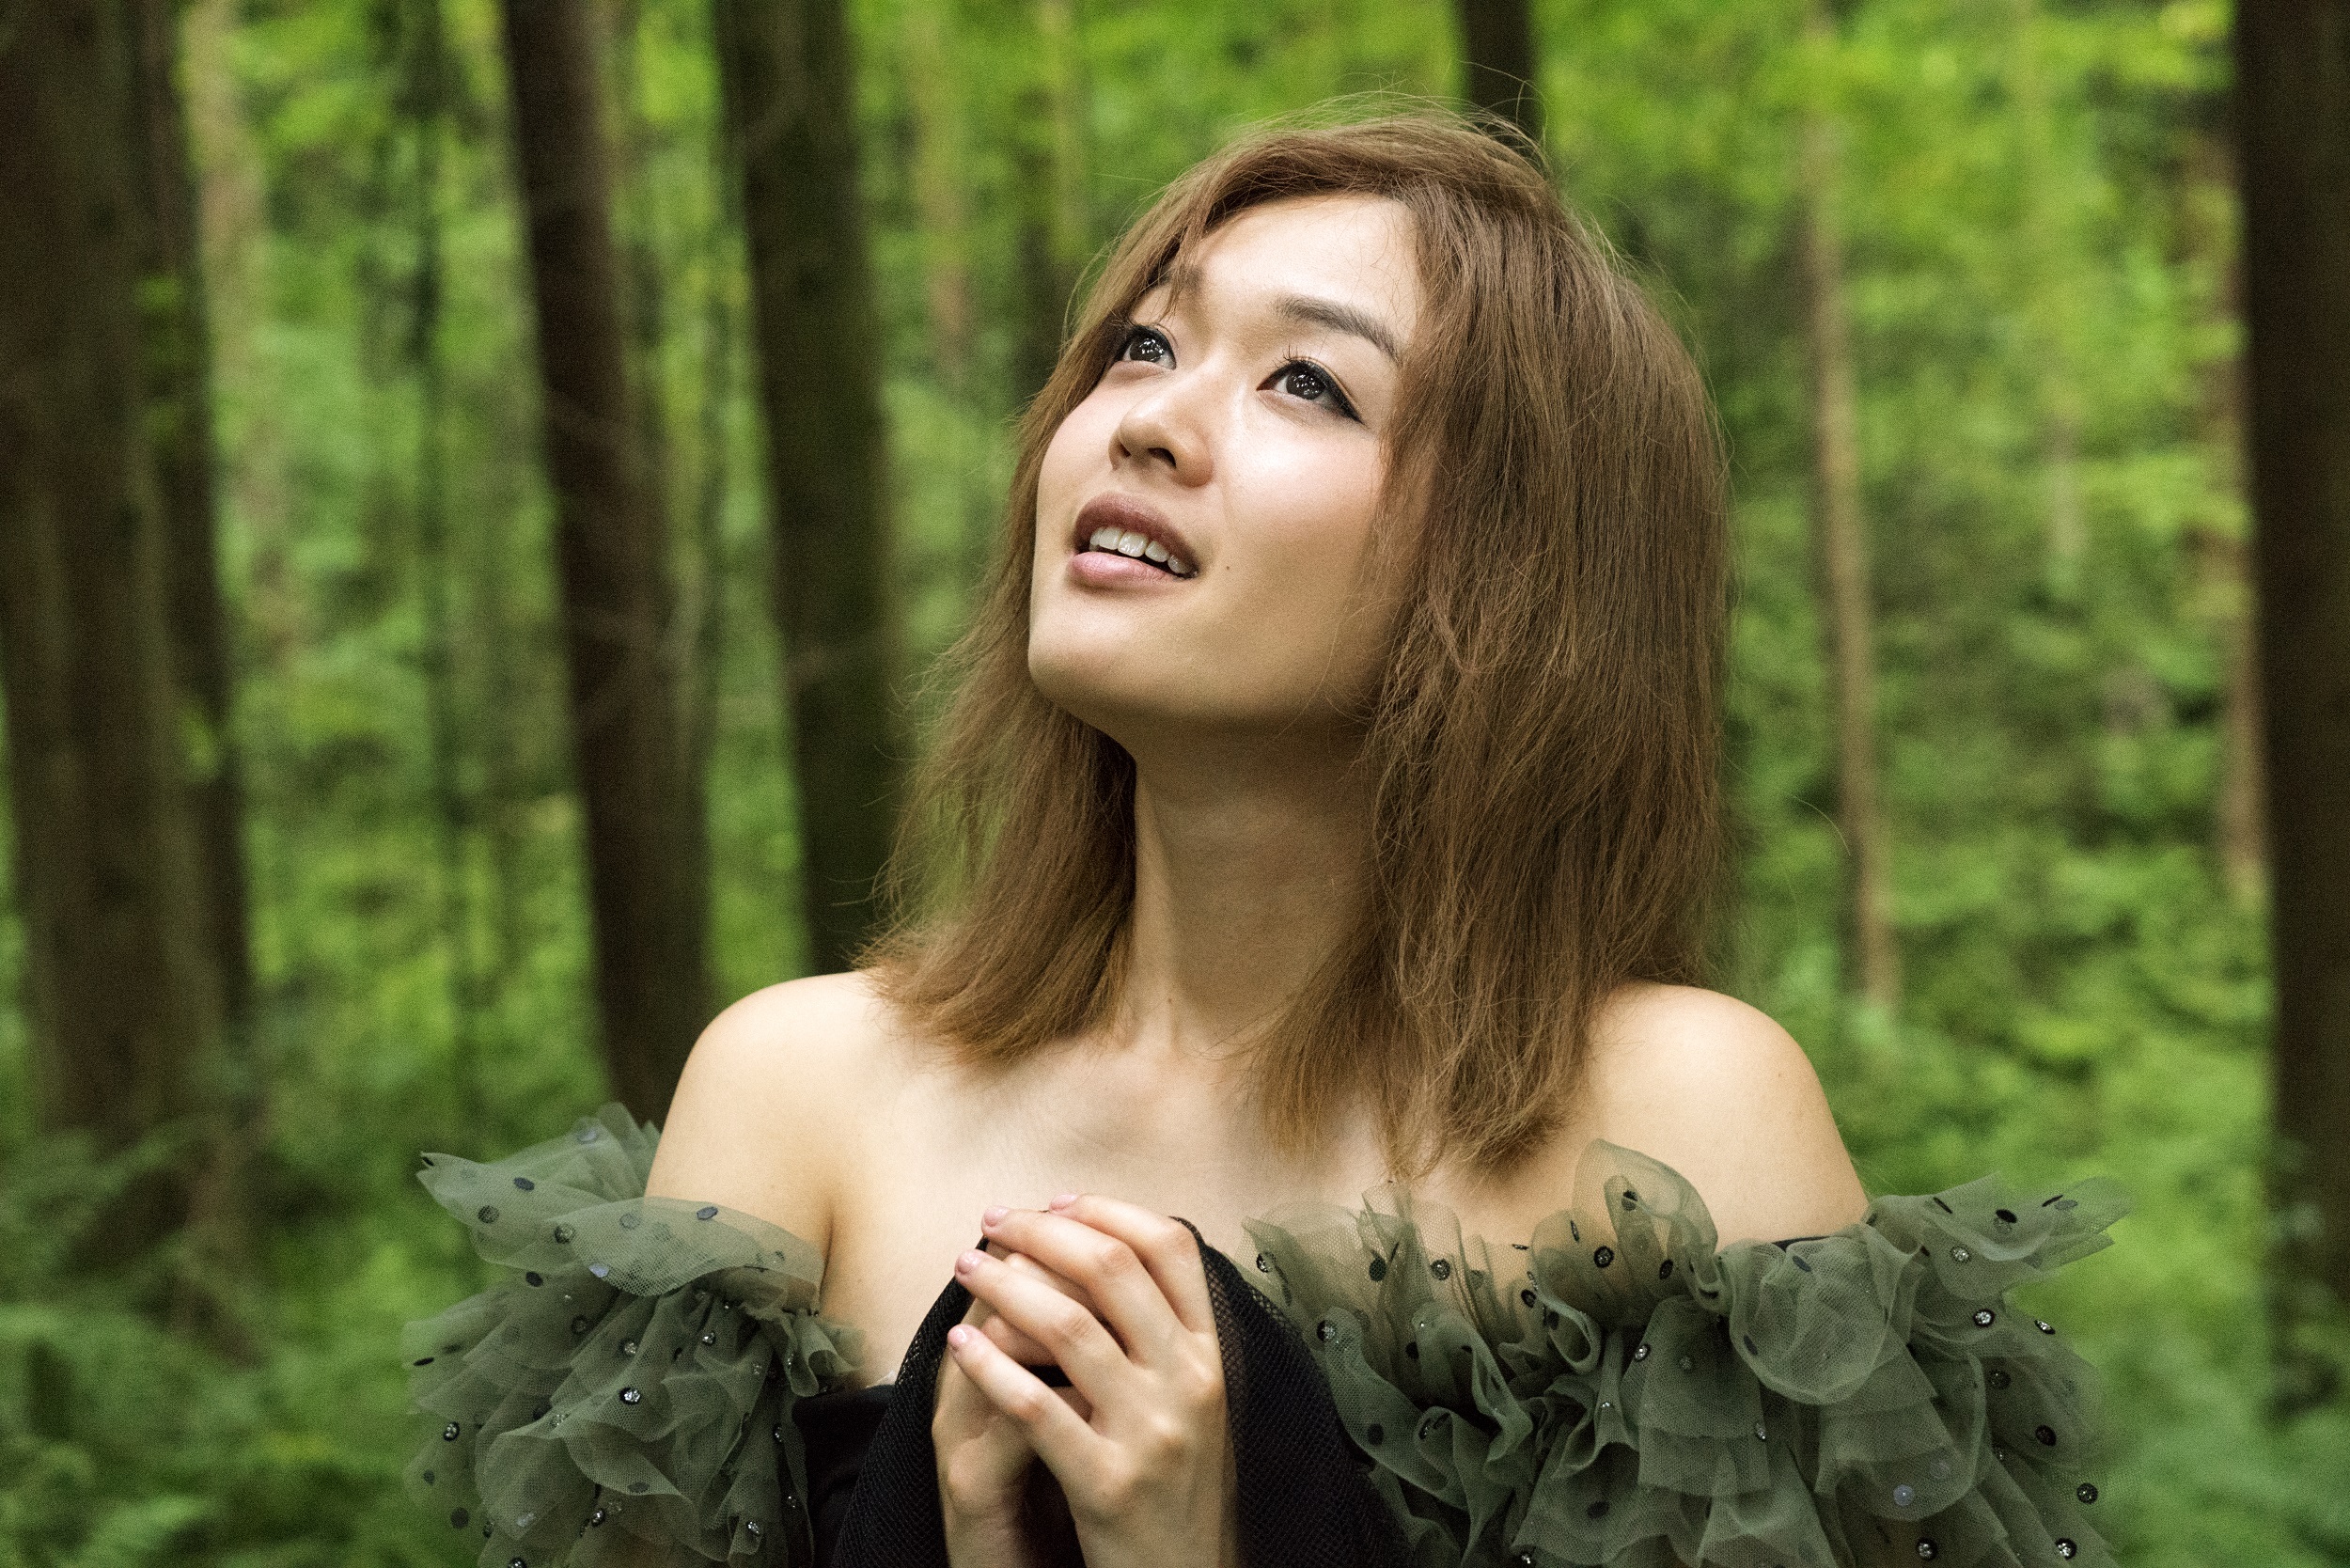 Jocelyn陳明憙加入索尼音樂大家庭 全新EP環保主打《遊樂》上線